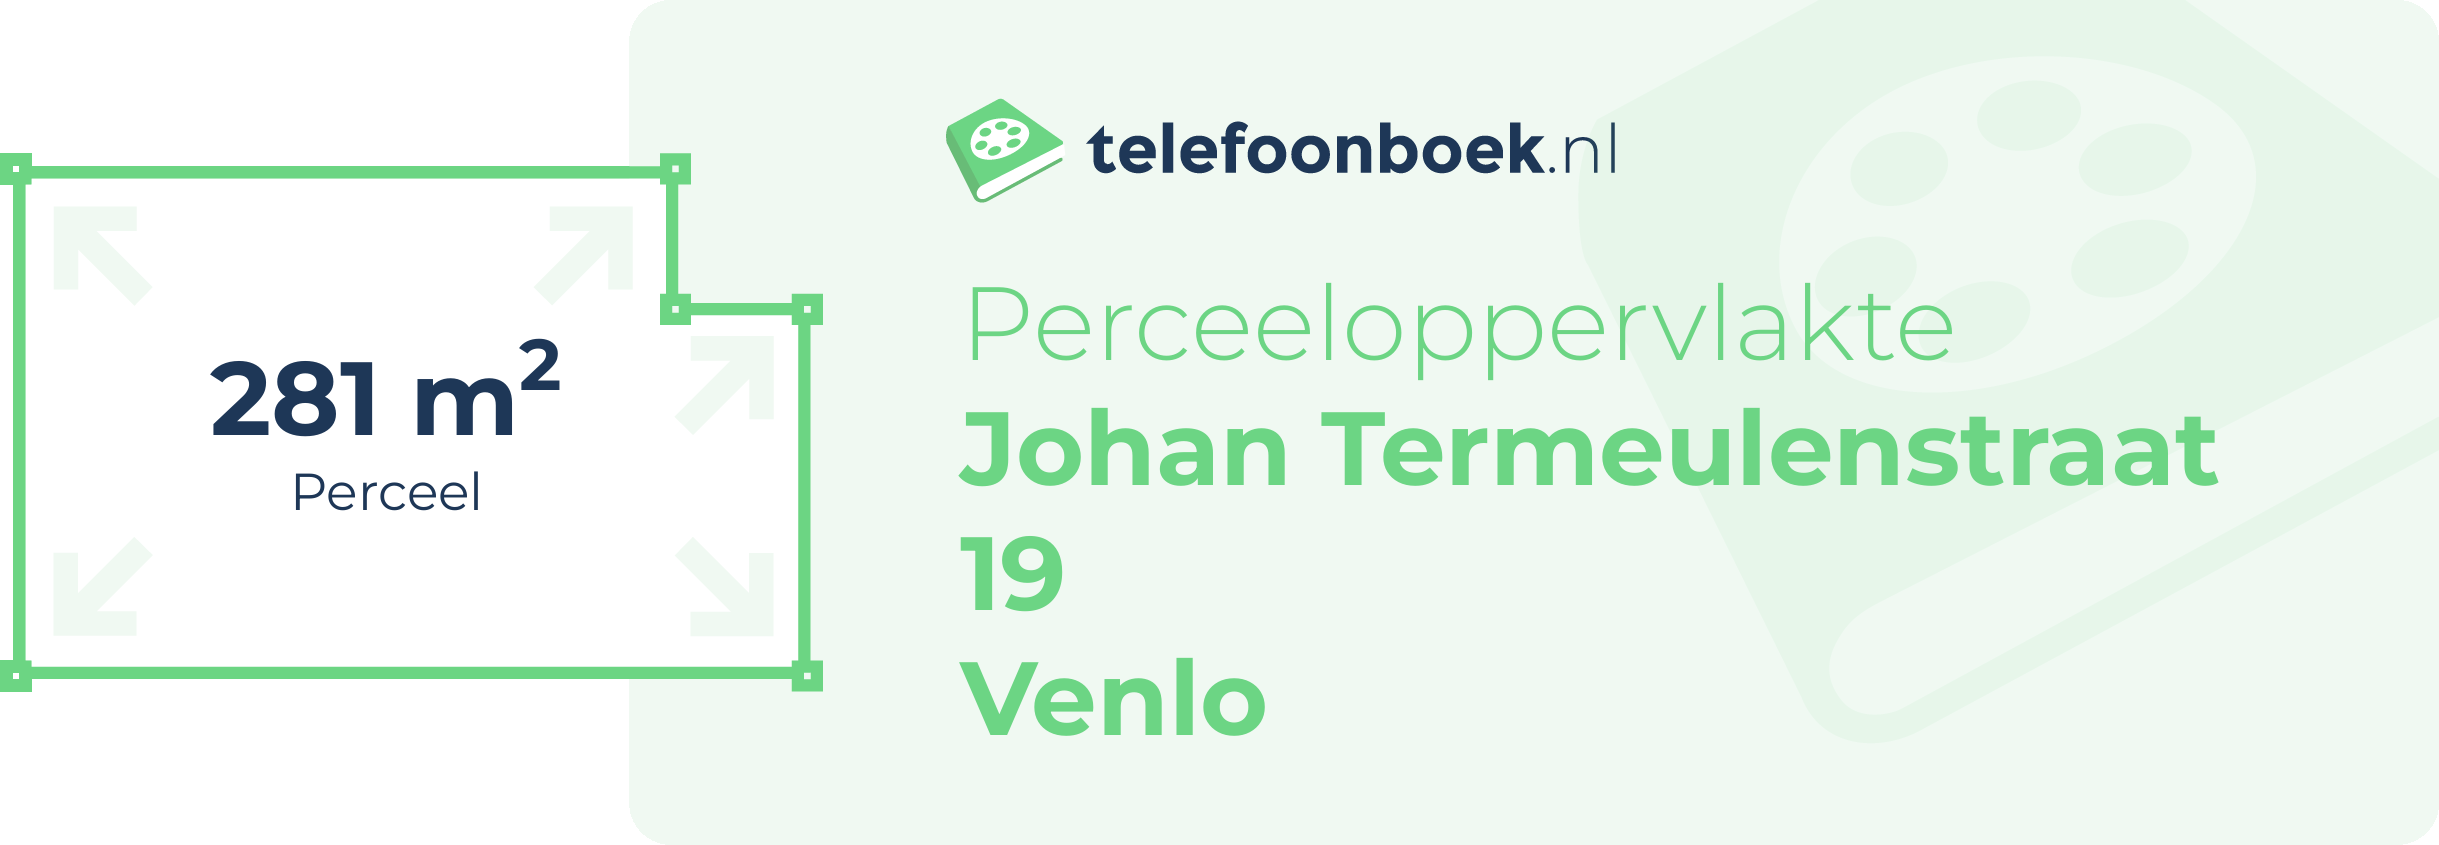 Perceeloppervlakte Johan Termeulenstraat 19 Venlo